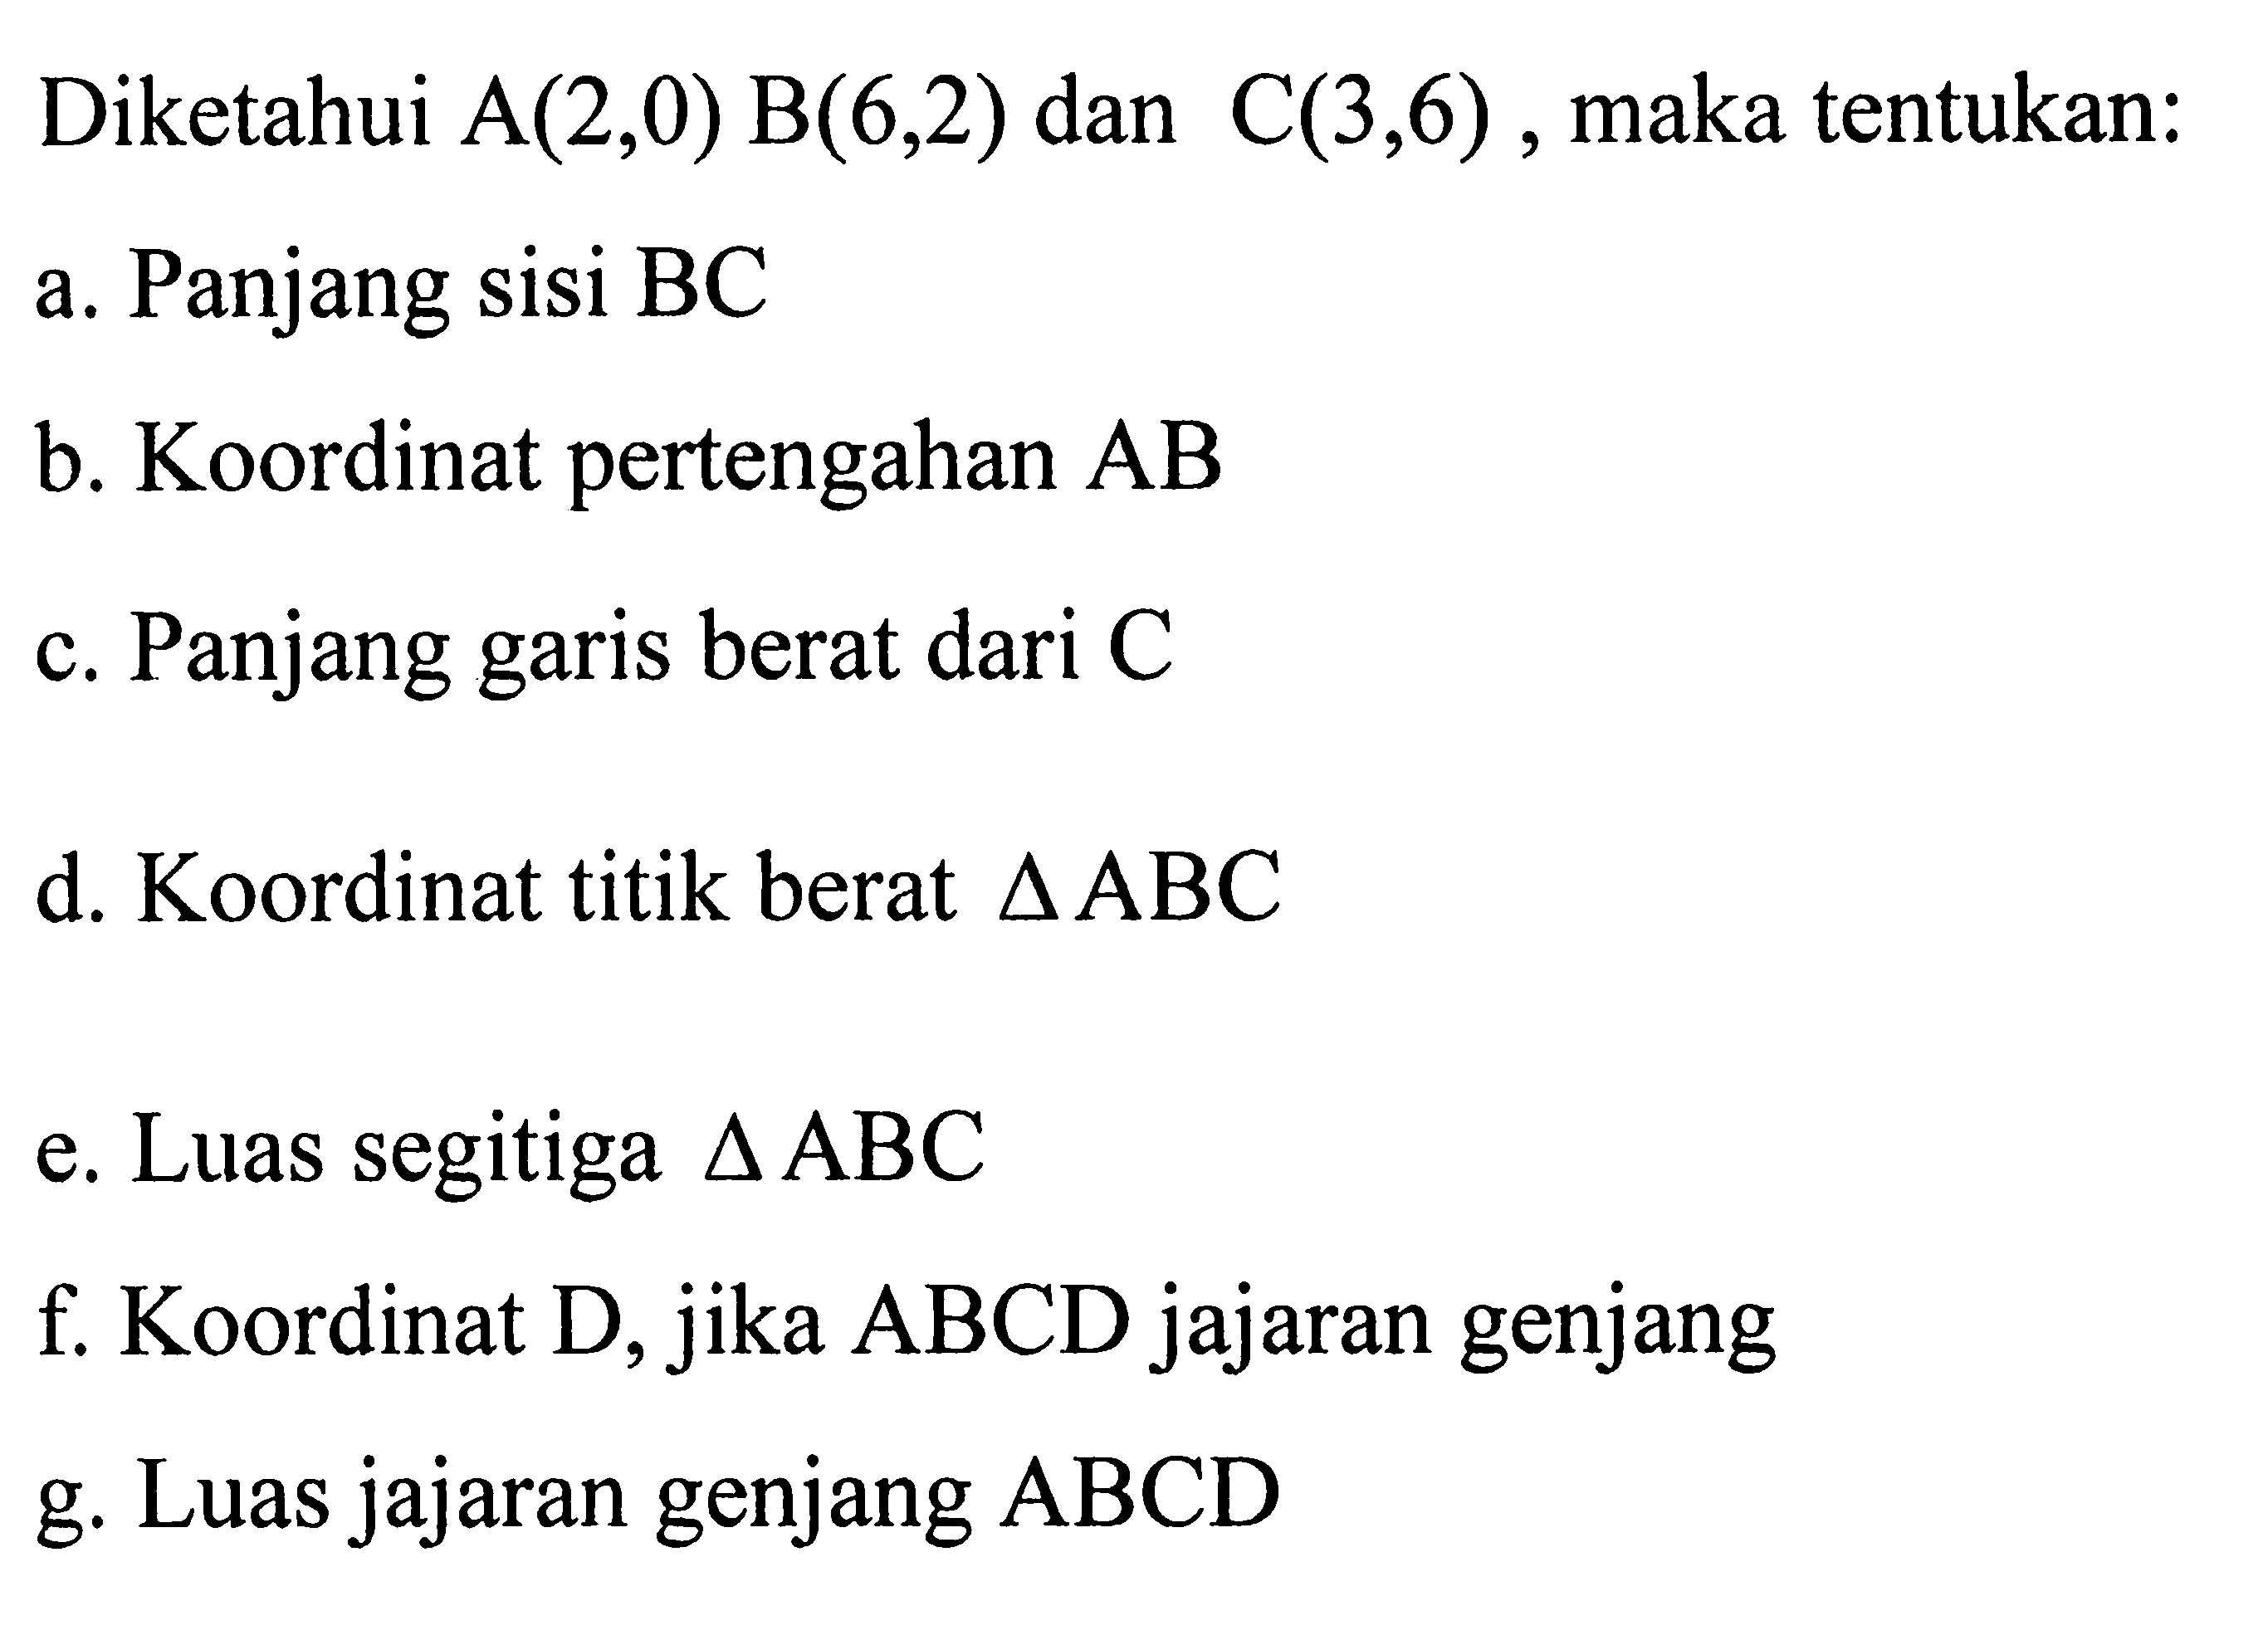 Diketahui A(2,0) B(6,2) dan C(3,6), maka tentukan: a. Panjang sisi BC b. Koordinat pertengahan AB c. Panjang garis berat dari C d. Koordinat titik berat segitiga ABC e. Luas segitiga segitiga ABC f. Koordinat D, jika ABCD jajaran genjang g. Luas jajaran genjang ABCD